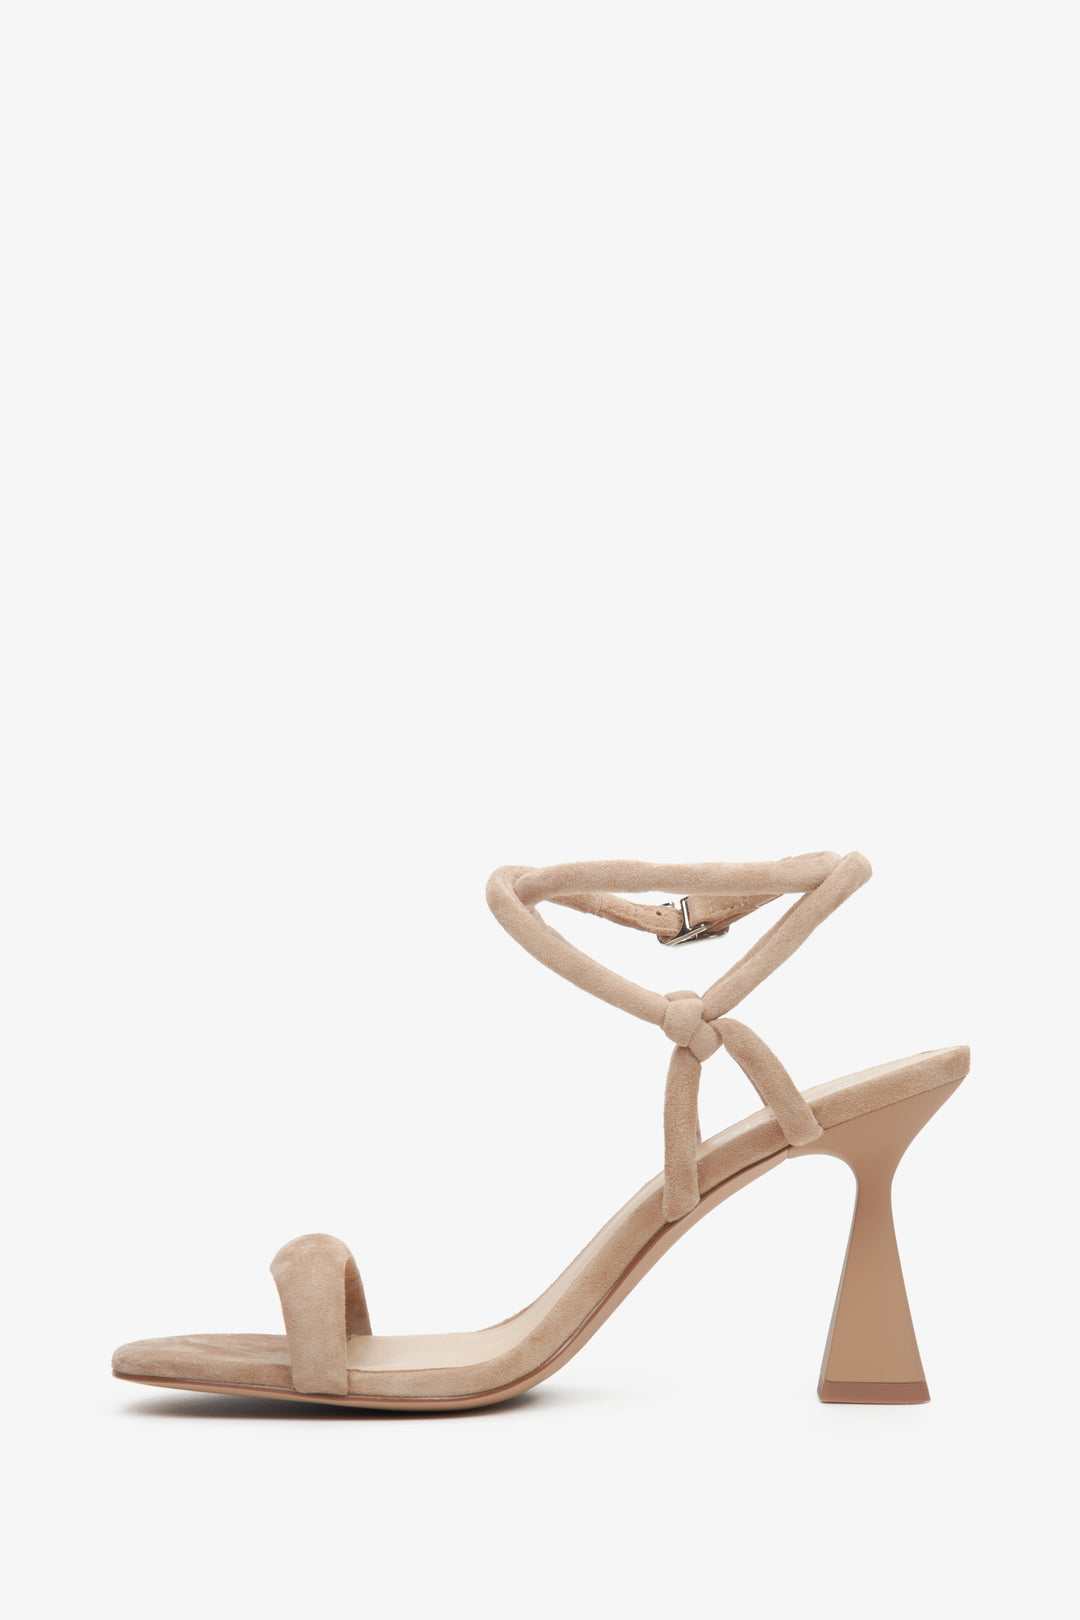 Women's beige strappy sandals on a funnel heel - shoe profile.